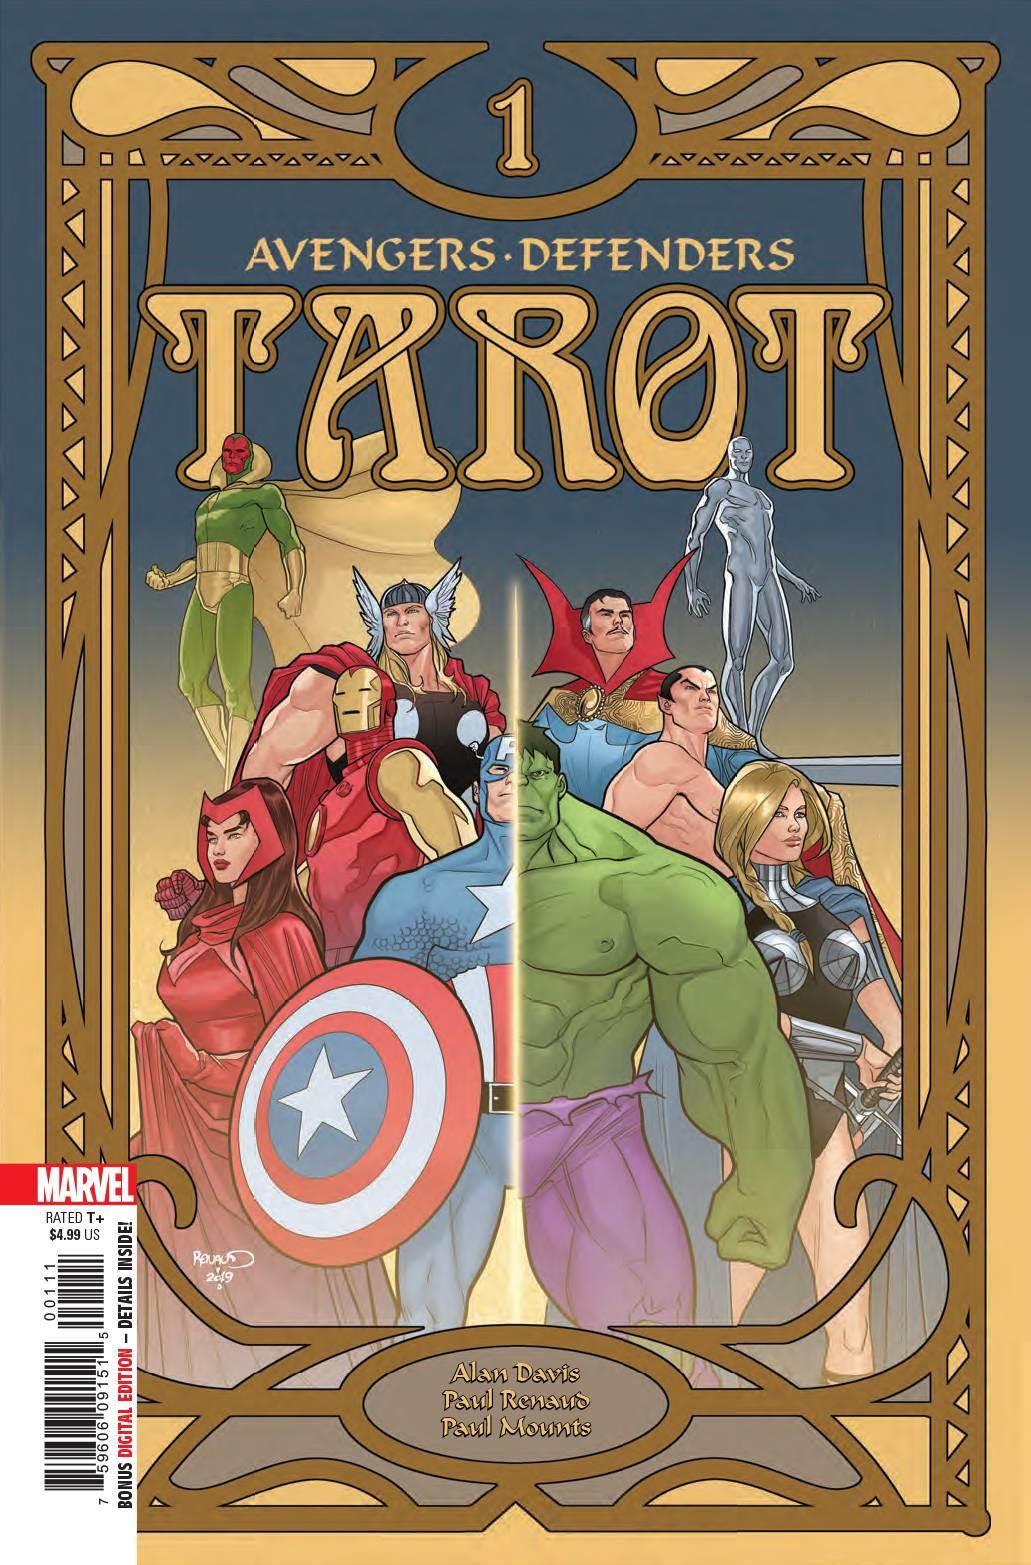 Tarot #1 (of 4) Marvel Comics Comic Book